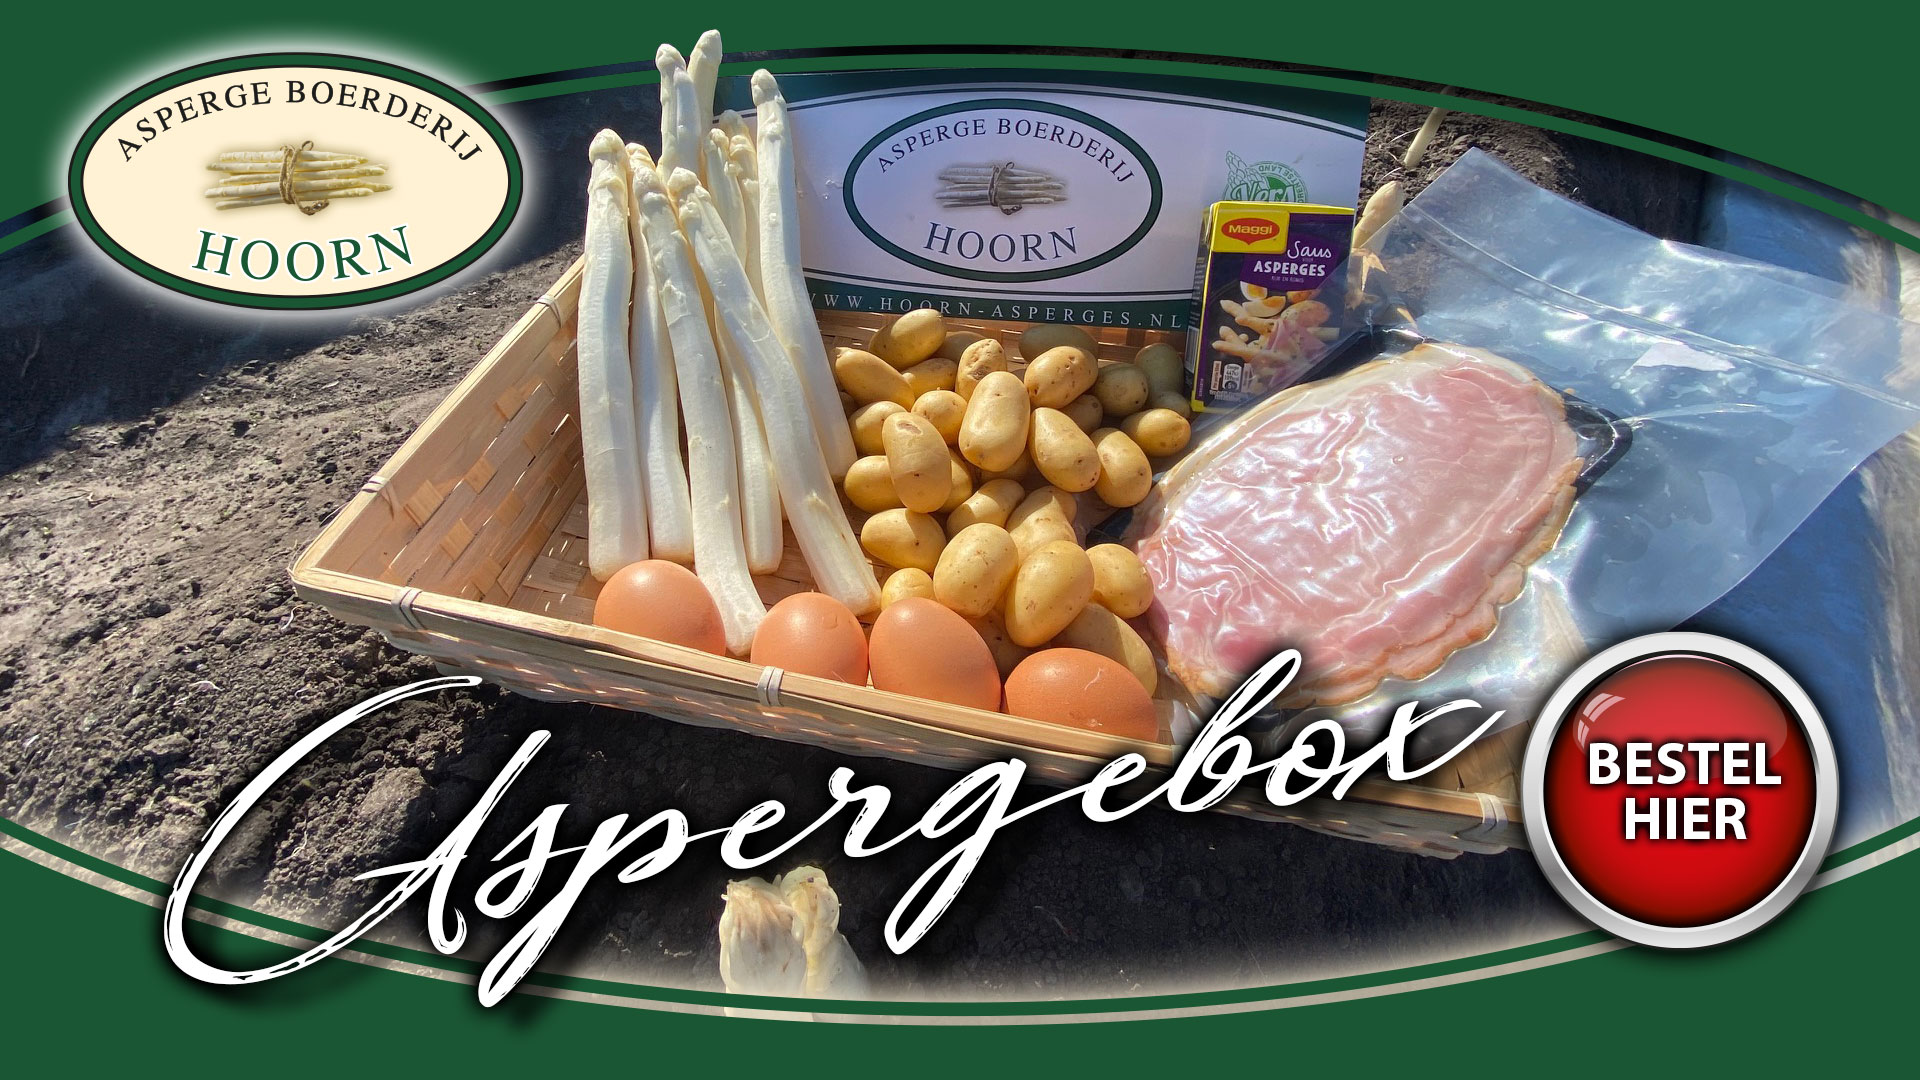 De aspergebox van Aspergeboerderij Hoorn, met daarin asperges, aspergesaus, eieren, krieltjes, ham en een recept. Klik hier om te bestellen